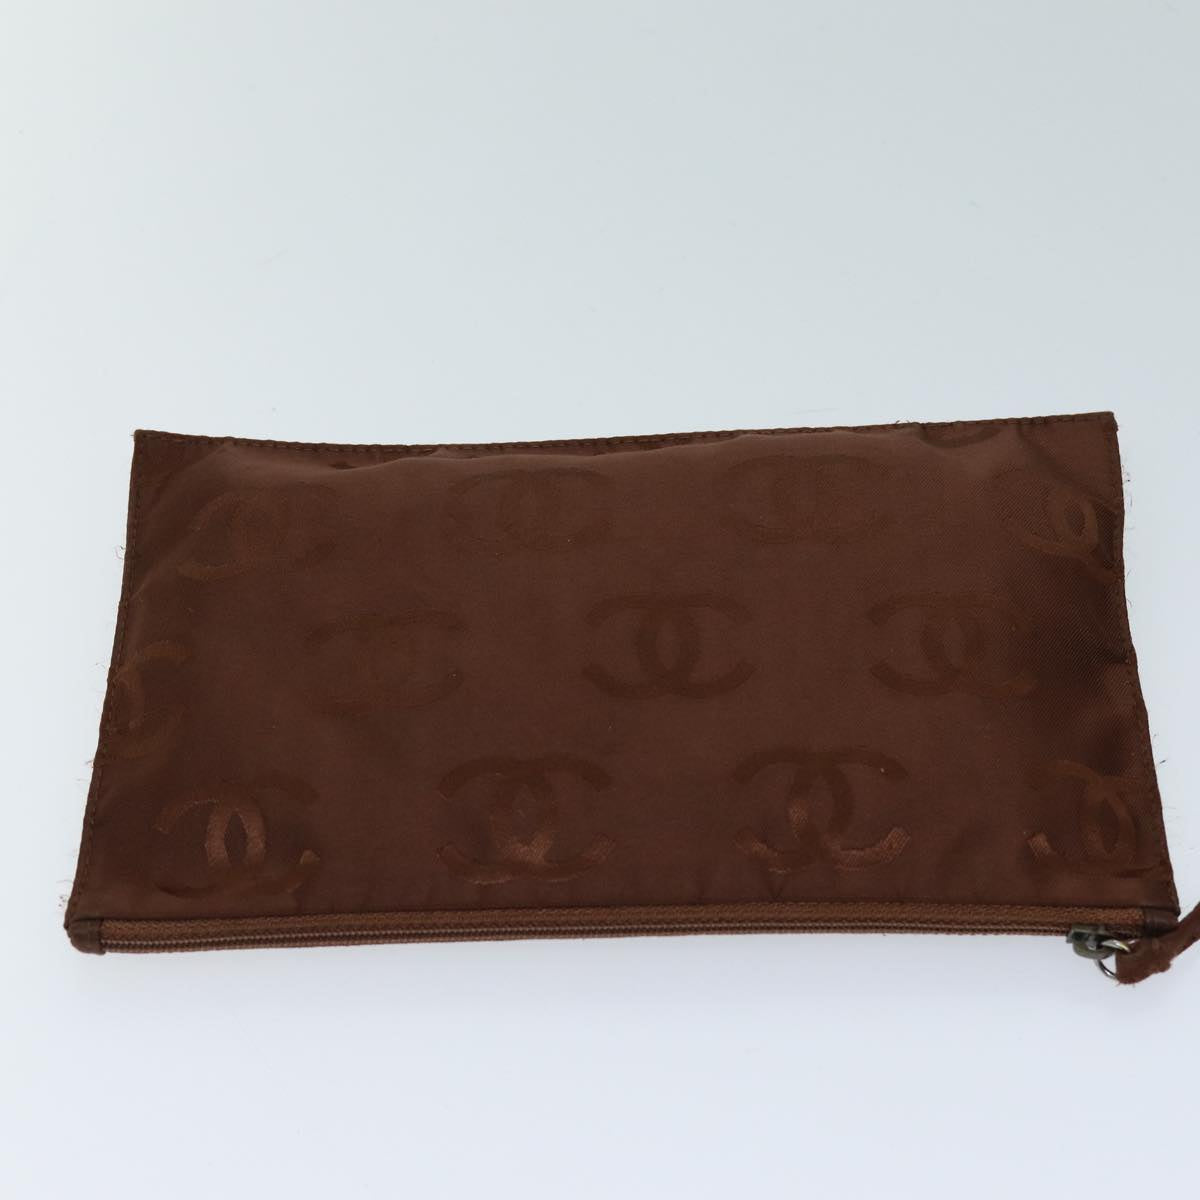 CHANEL Chain Shoulder Bag Mouton Brown CC Auth bs13882